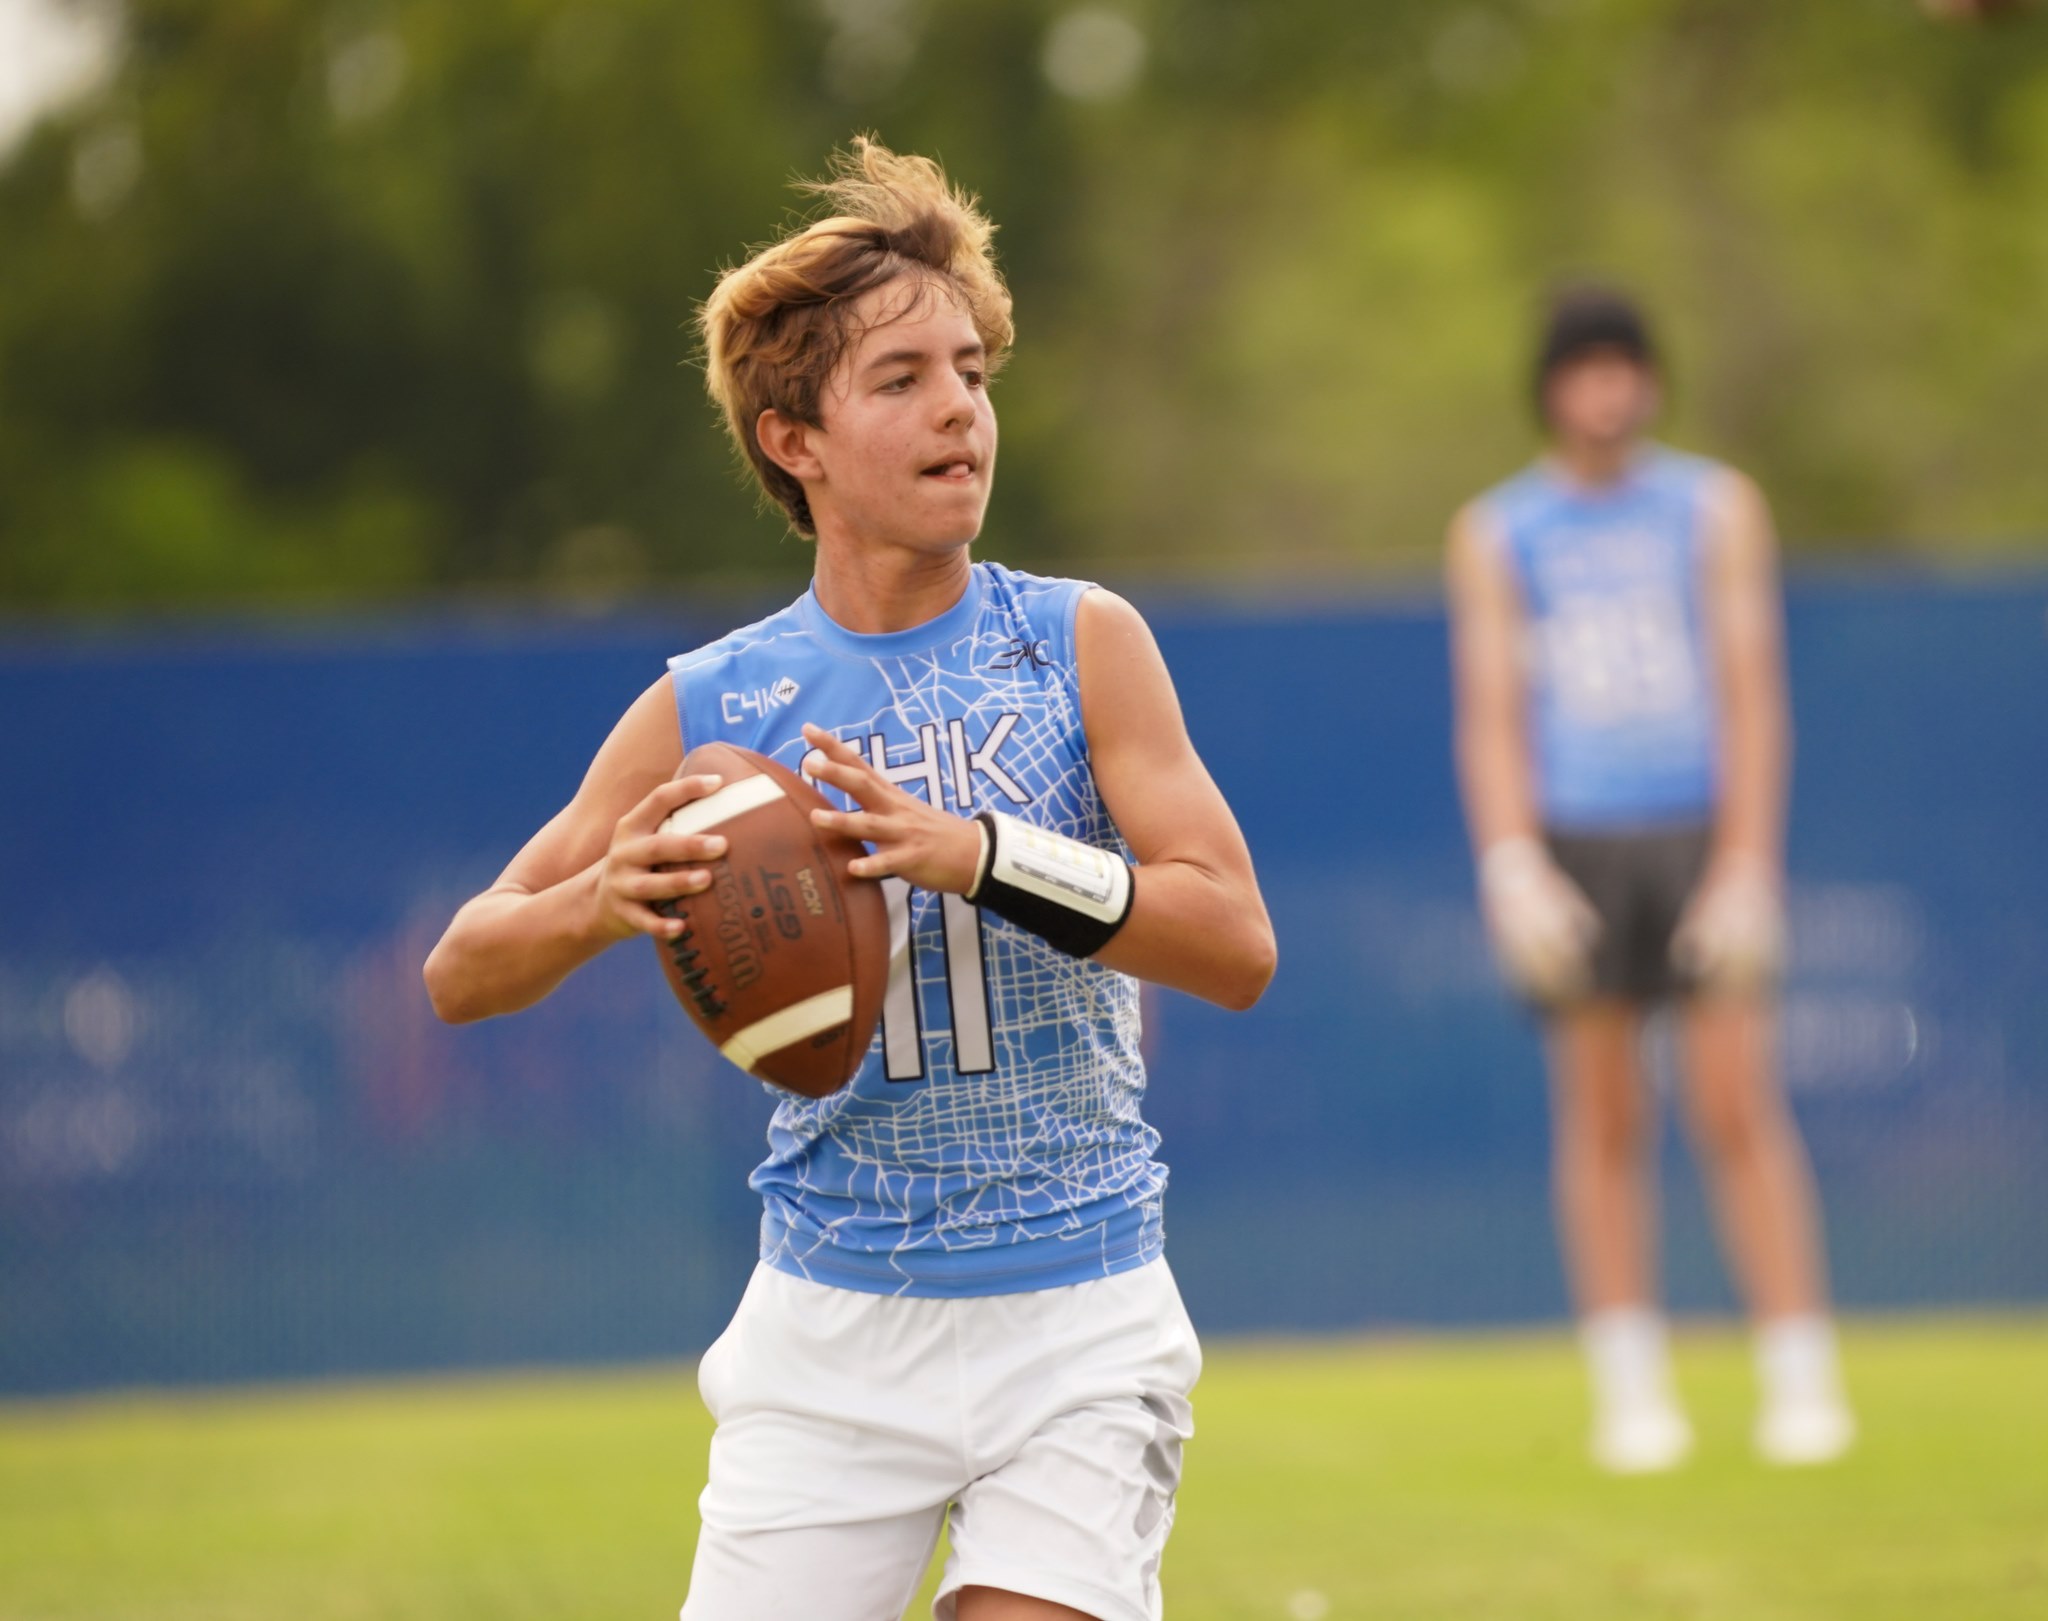 Teen holding football on field